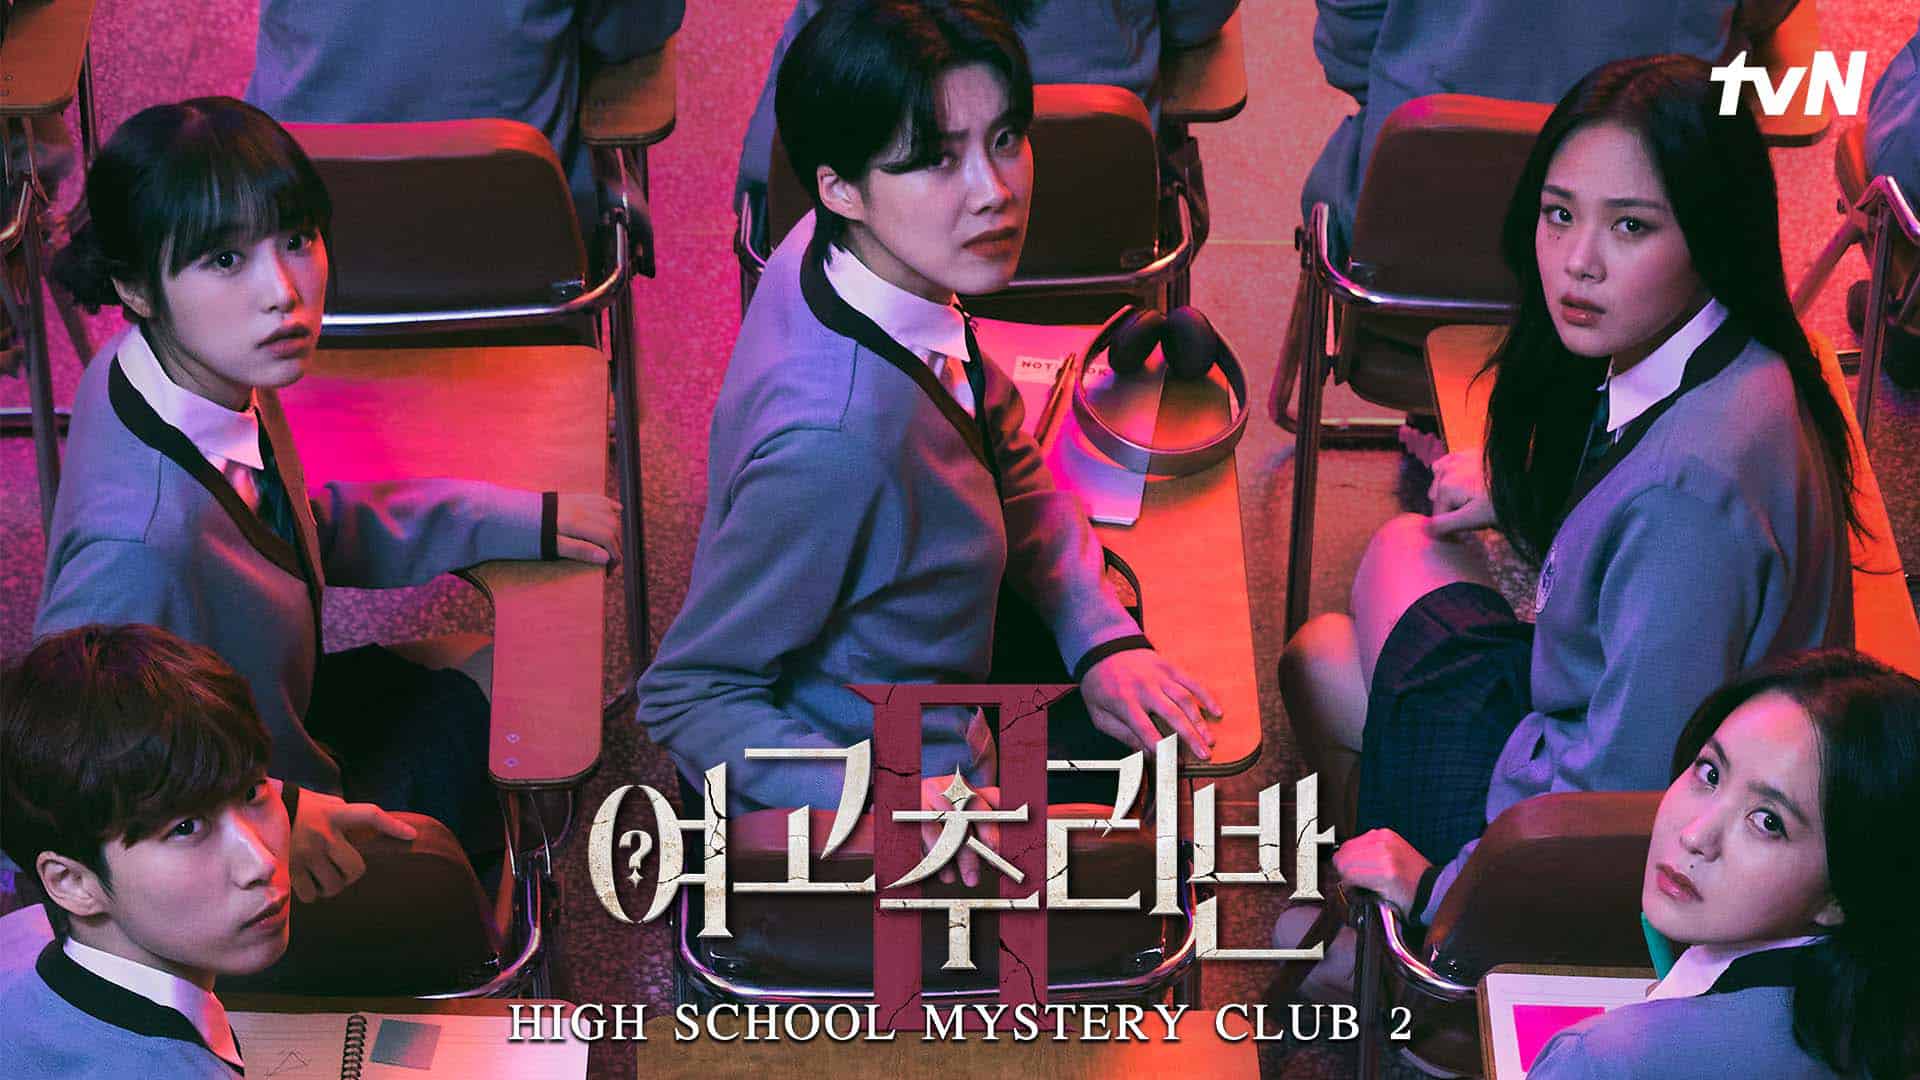 High School Mystery Club